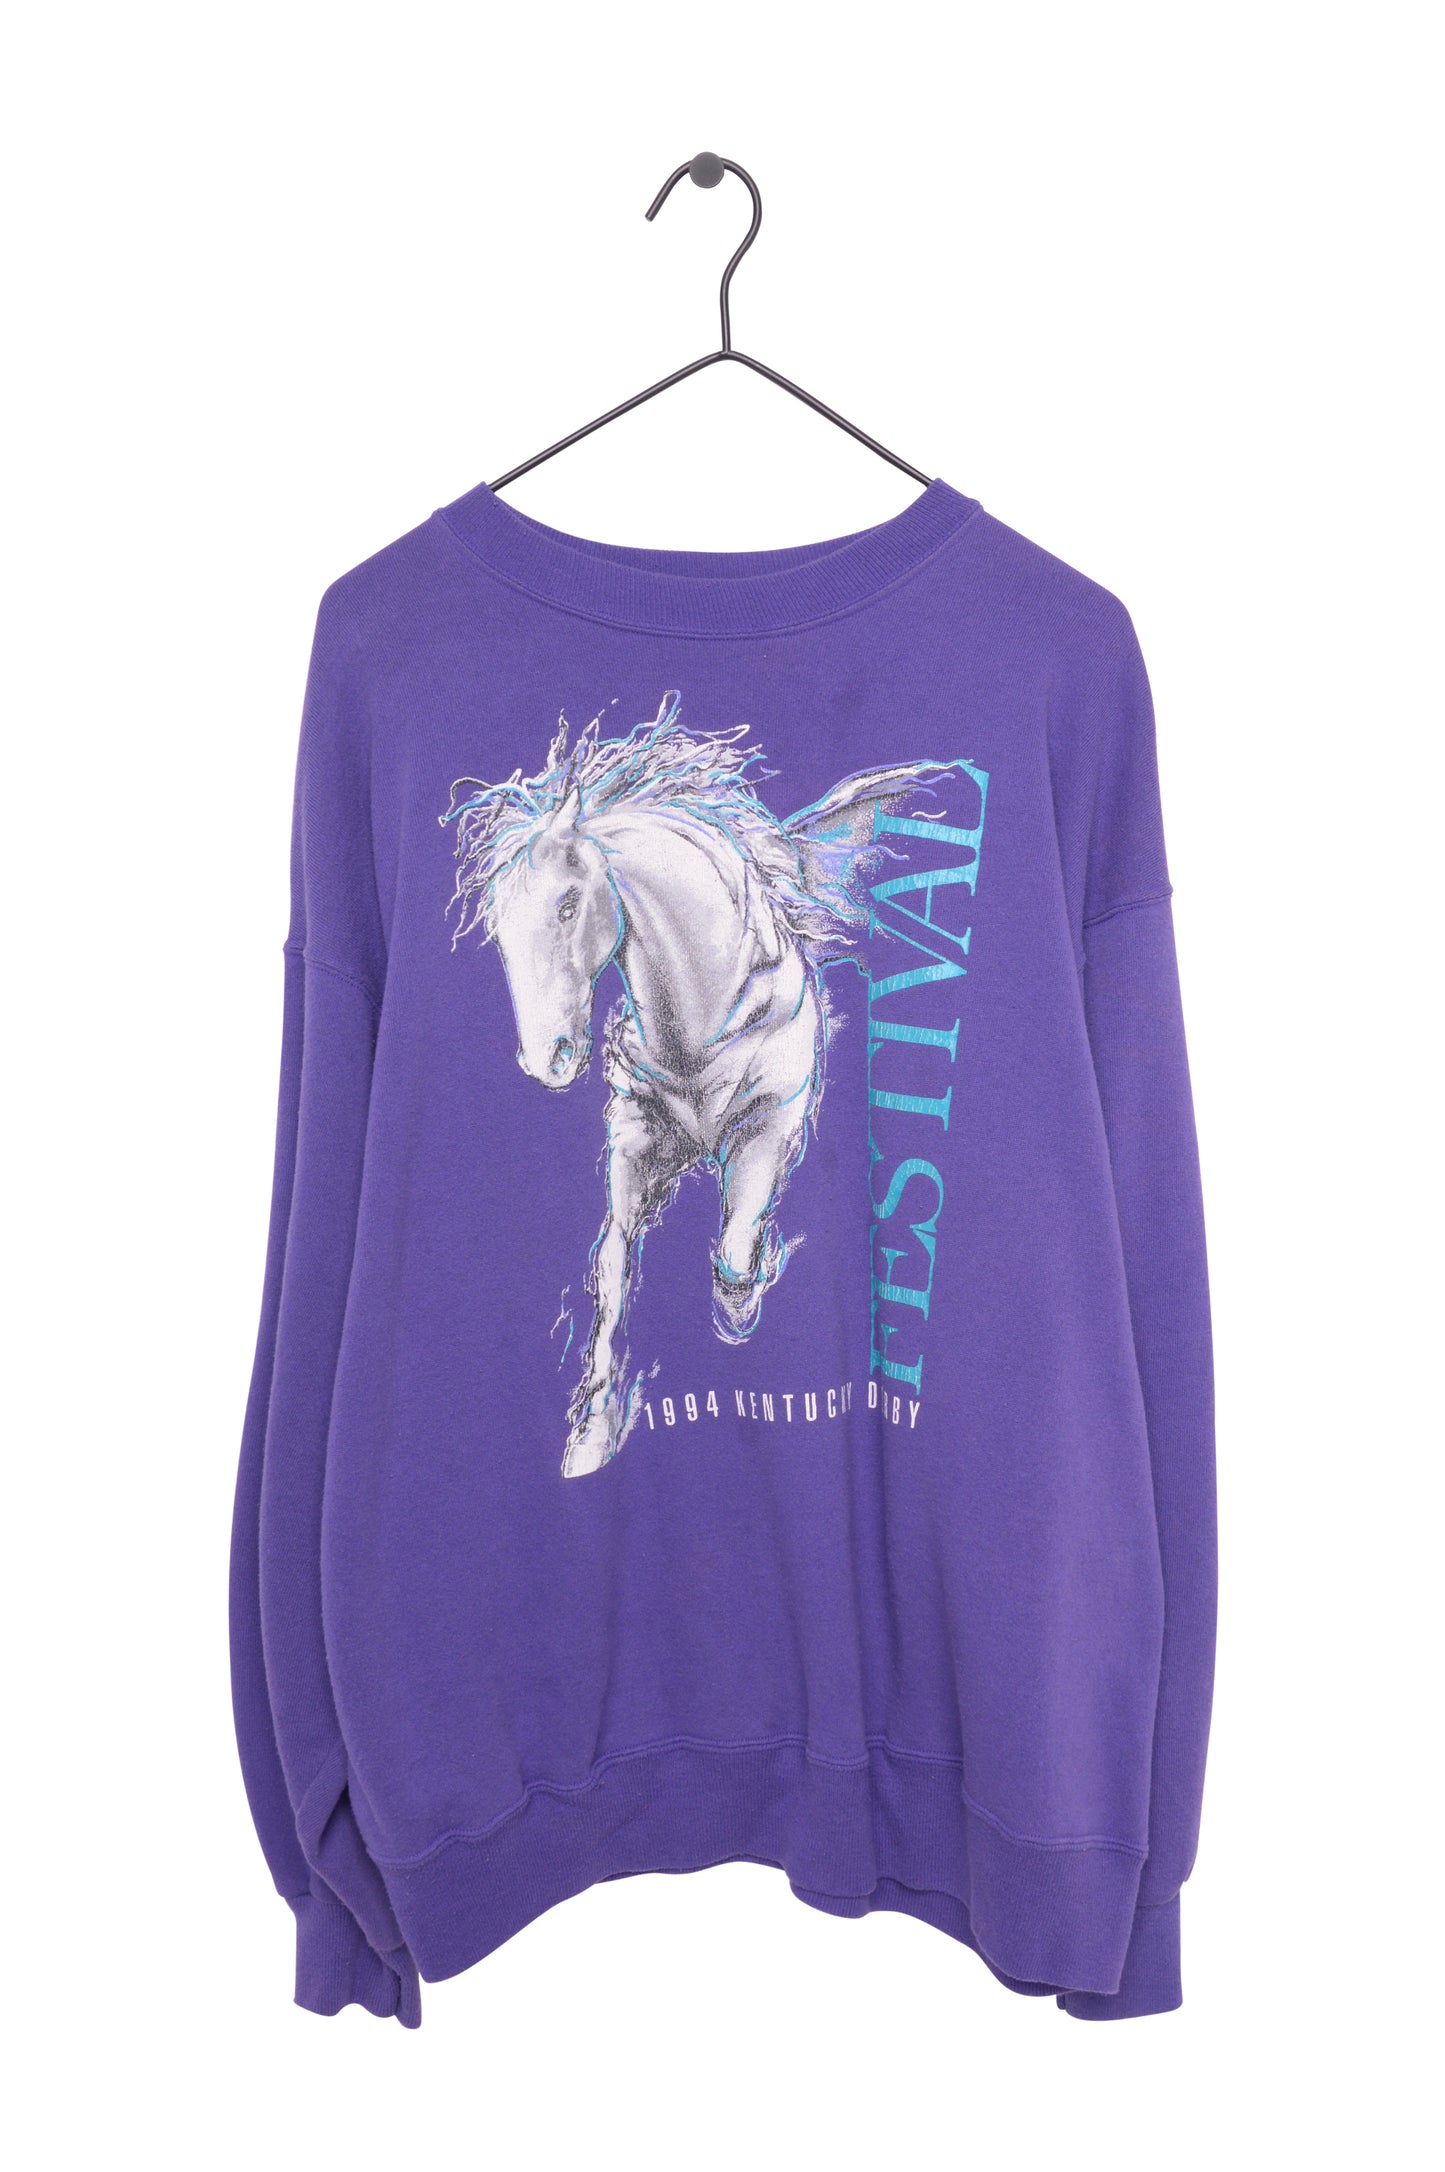 1994 Kentucky Derby Horse Sweatshirt